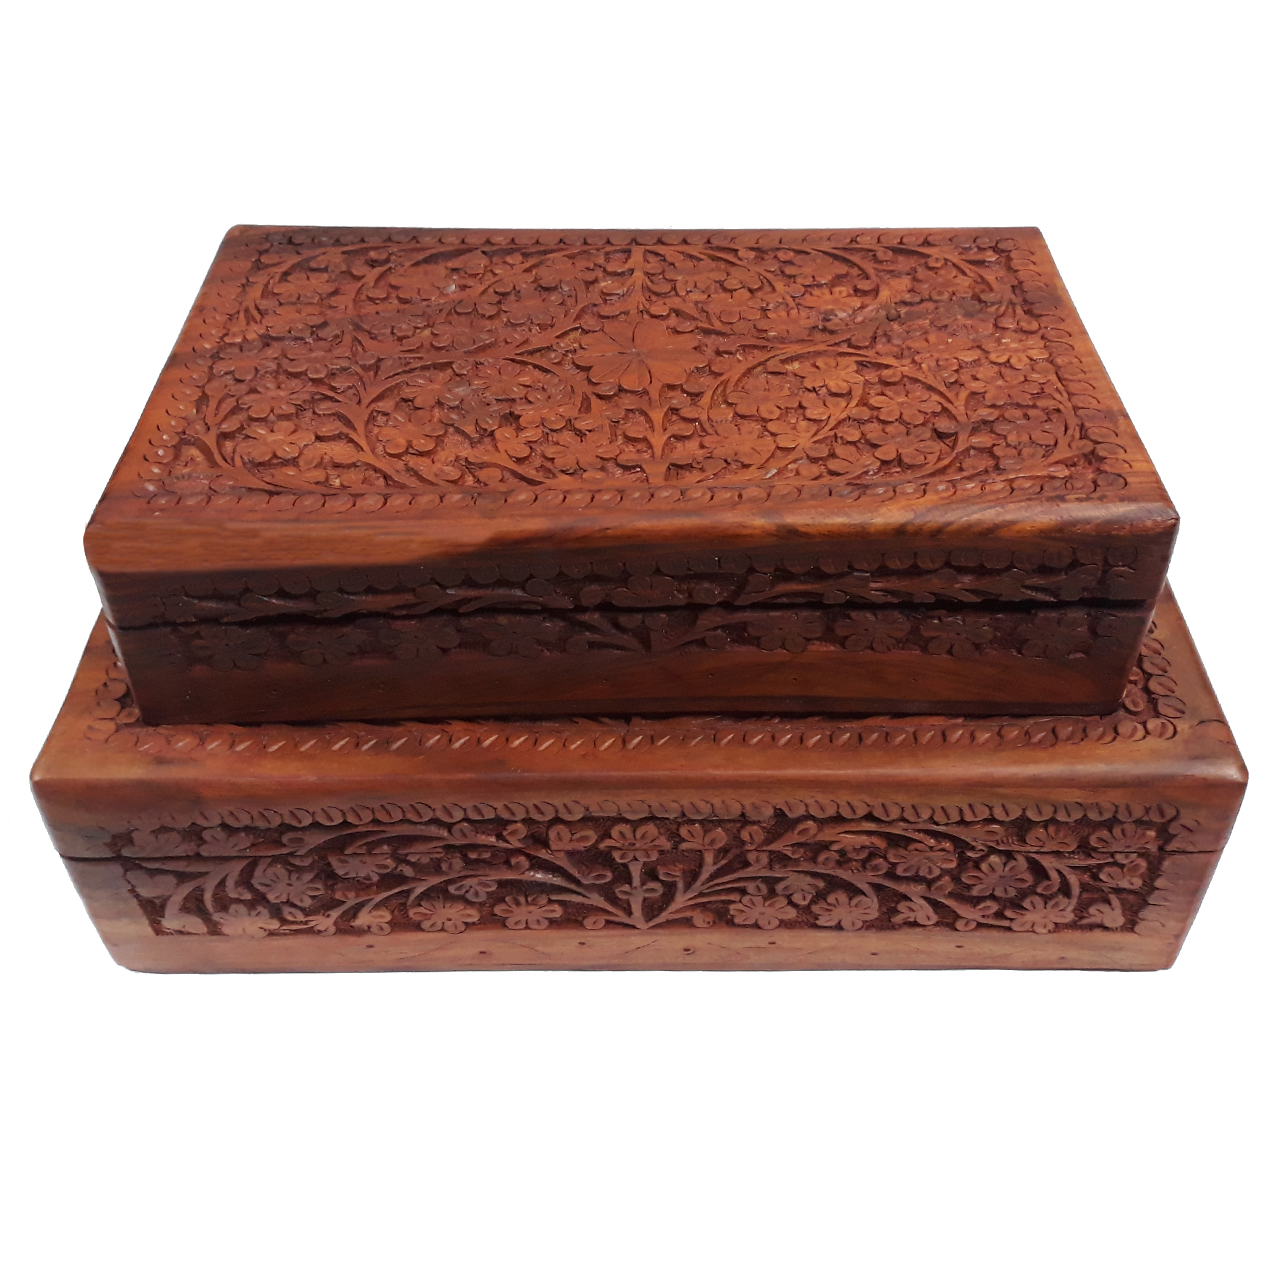 جعبه چوبی منبت کاری هندی مدل 1015-K مجموعه 2 عددی